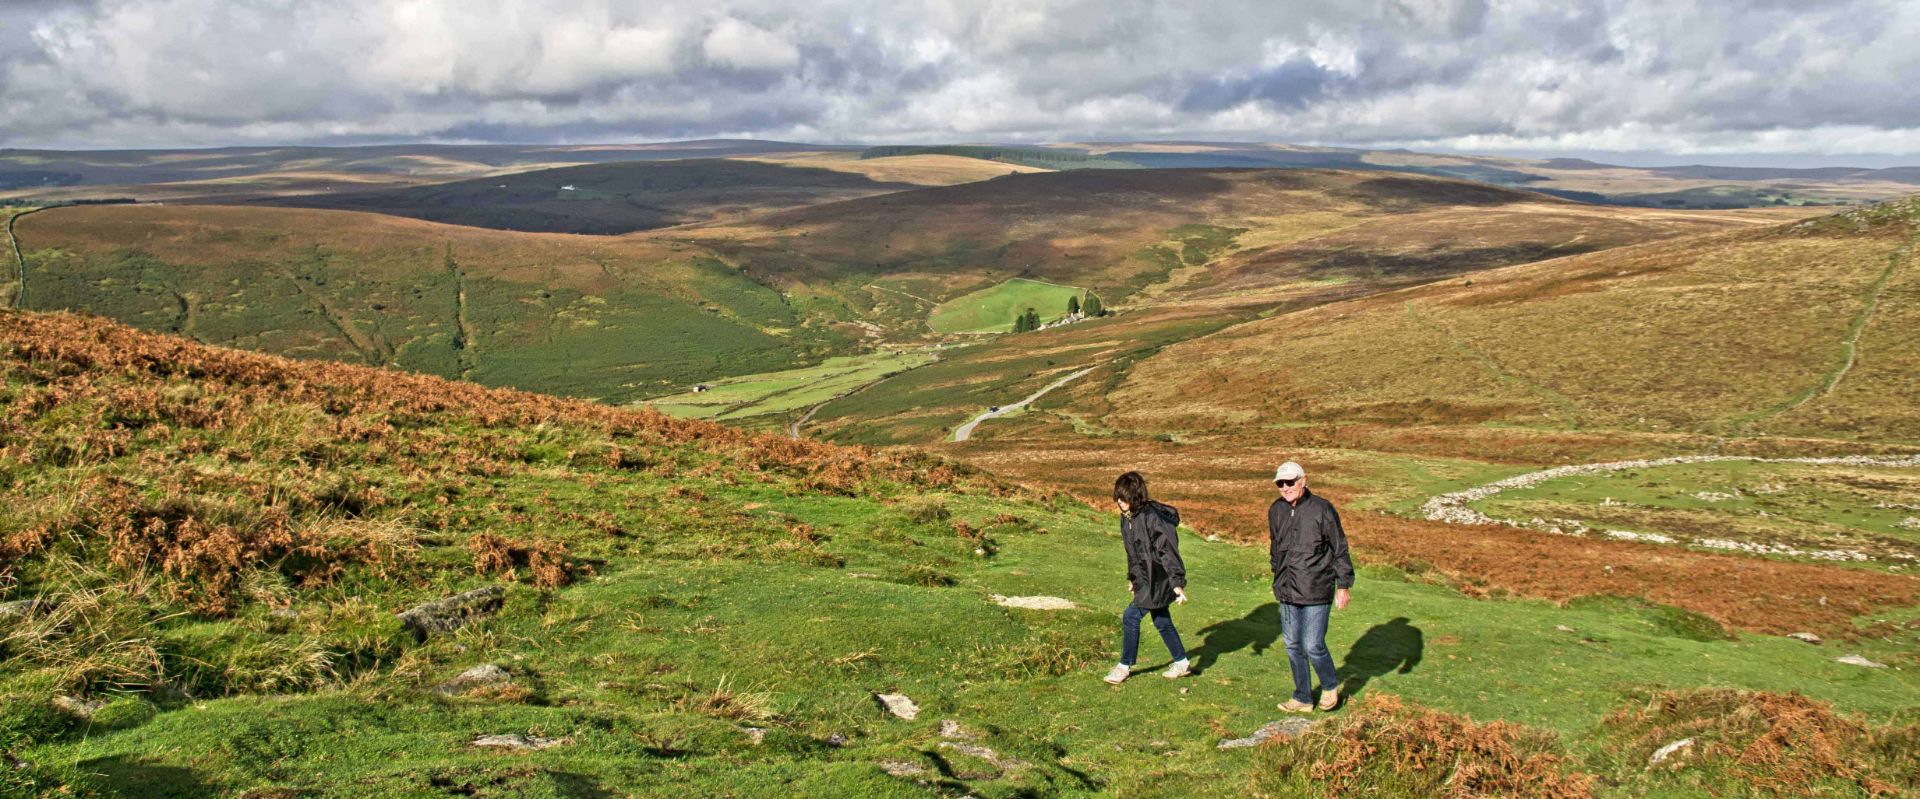 Guests walking on Dartmoor